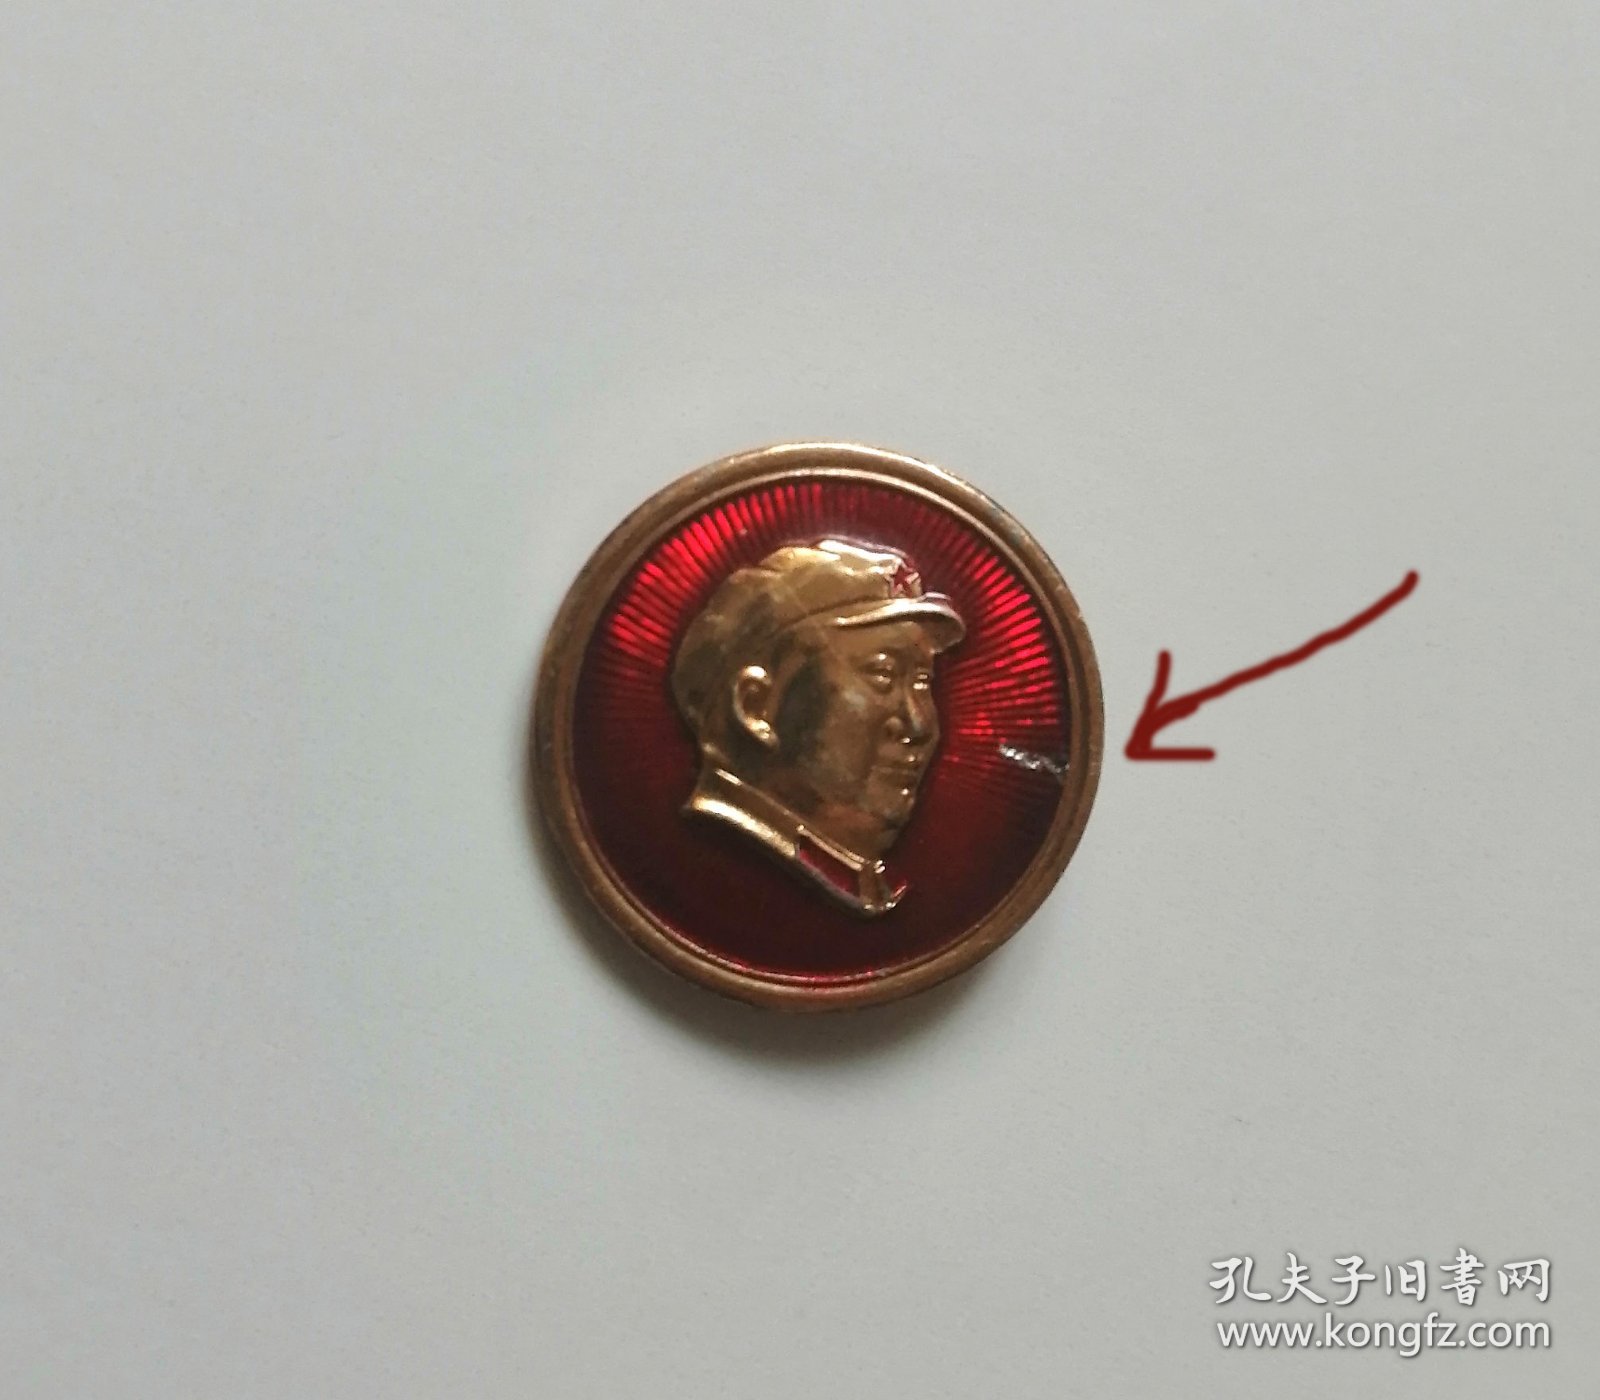 毛主席像章-右看头像-广玩-有一条3毫米的掉漆